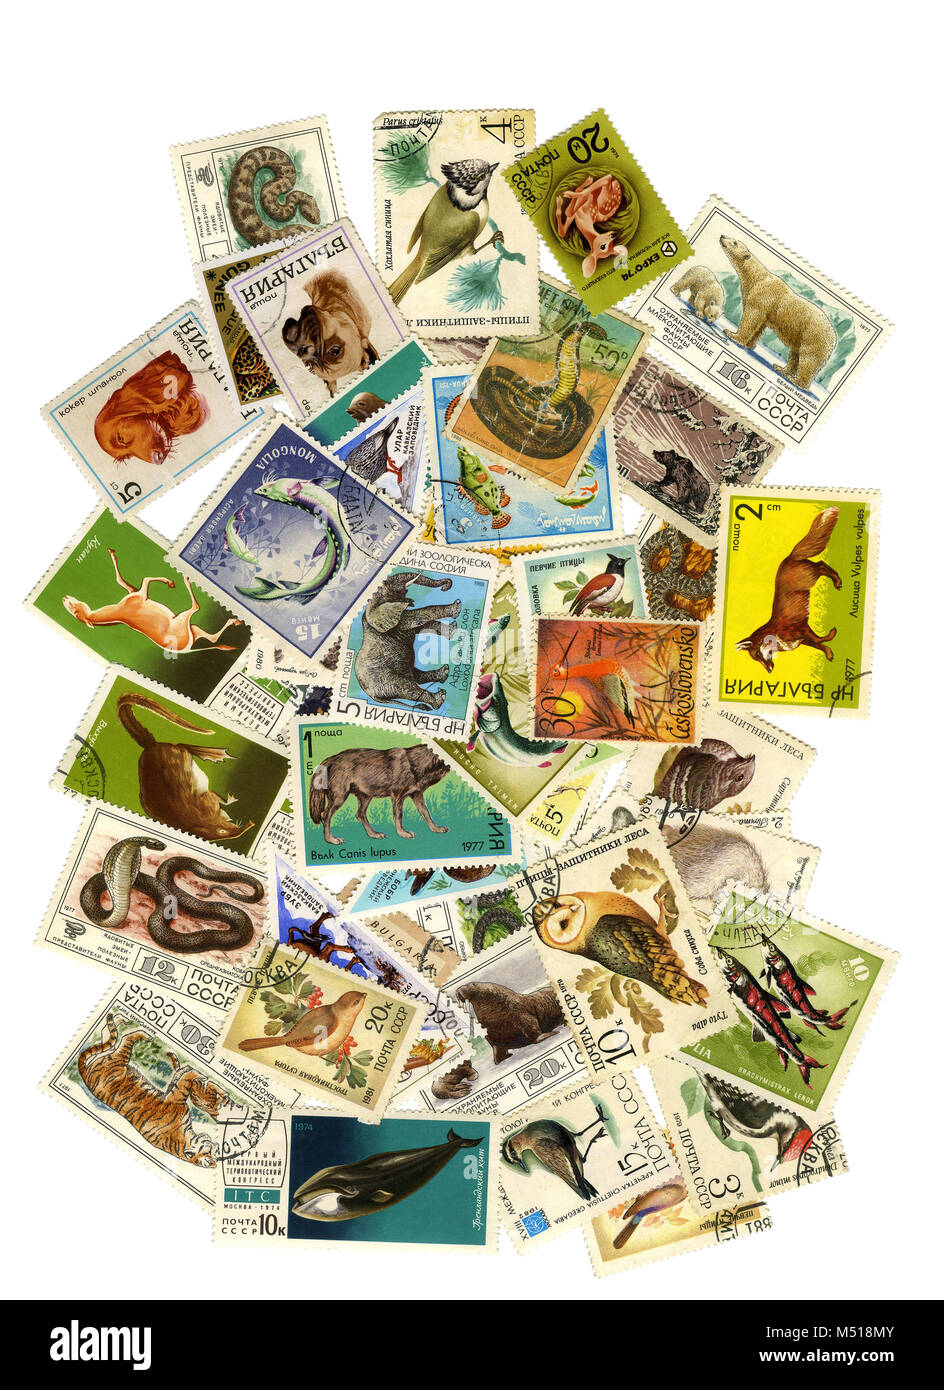 Eine Collage von Briefmarken zum Thema Natur. Zu einer Collage von